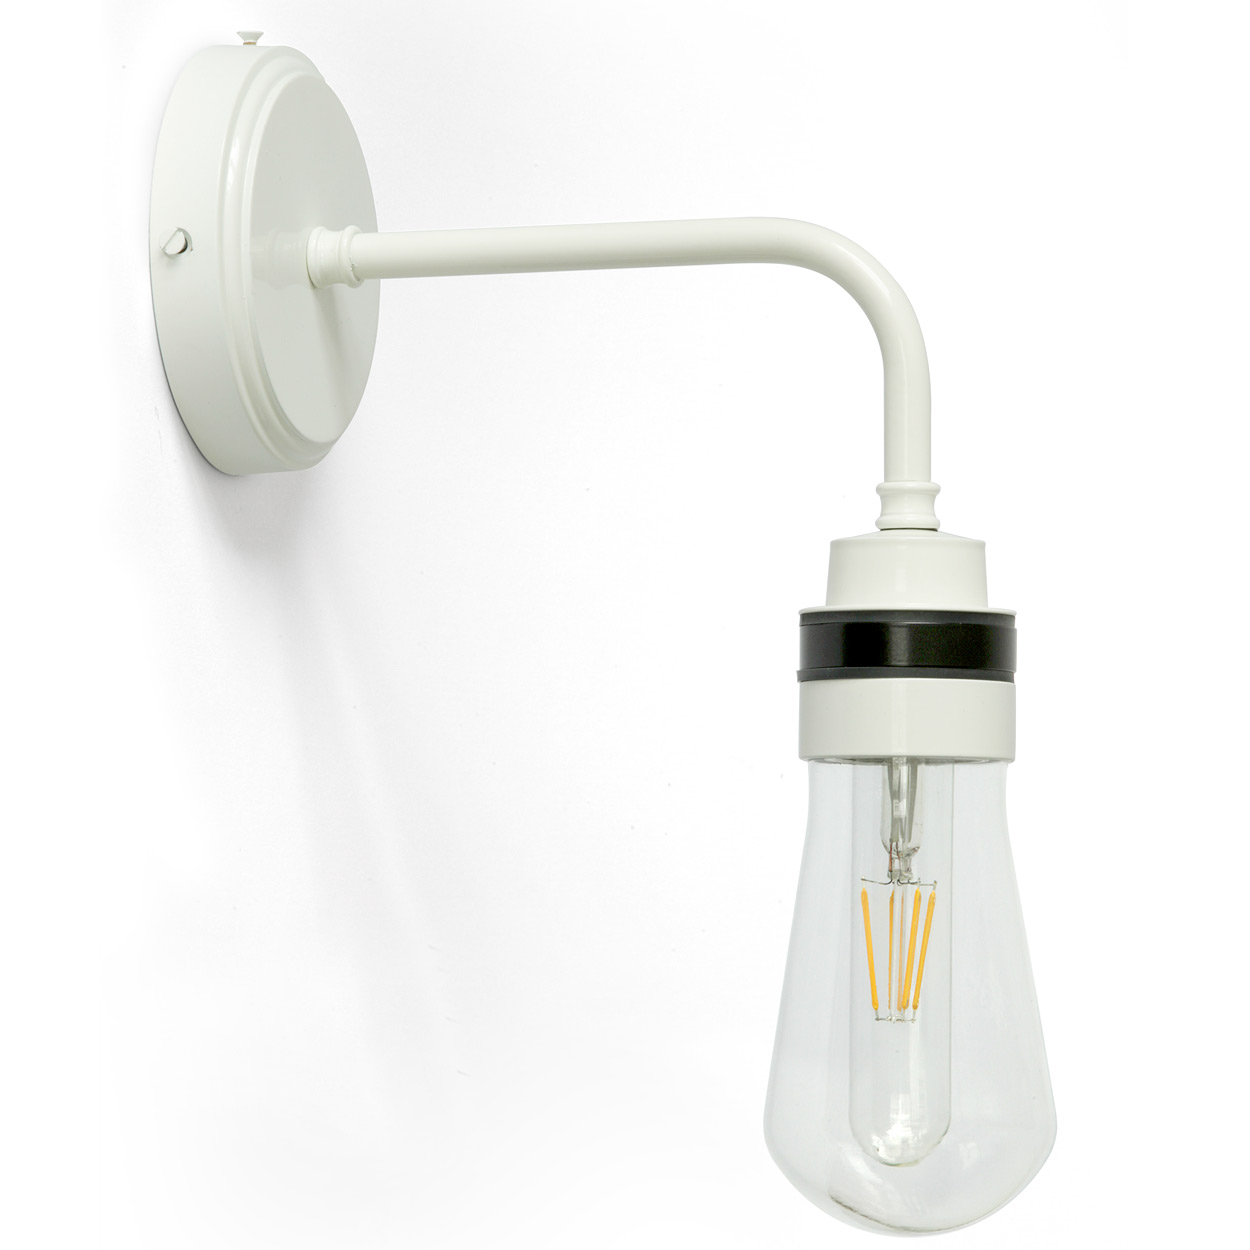 Schlichte Wandlampe mit Glaskolben, IP65: Schlichte Wandlampe mit Glaskolben, weiß pulverlackiert, wassergeschützt mit IP 65